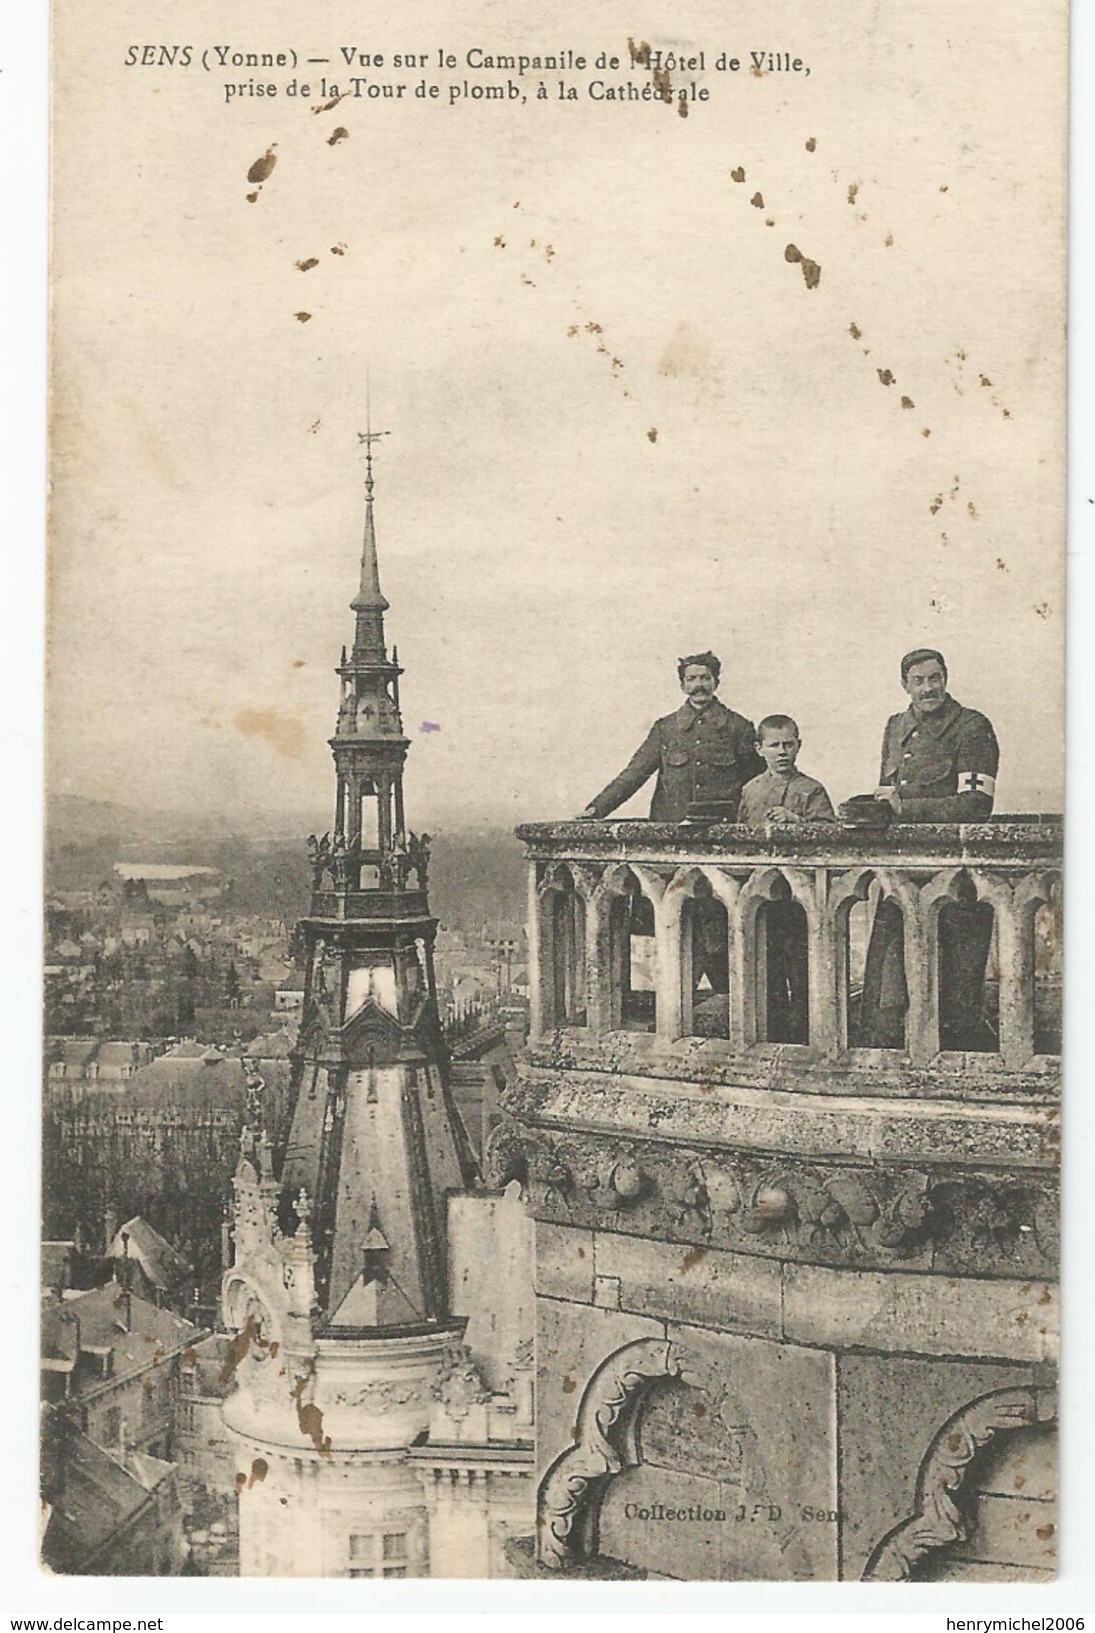 Marcophilie - Sens 89 Yonne Cachet Commission Militaire De La Gare Sens Lyon Est 1917 - WW I